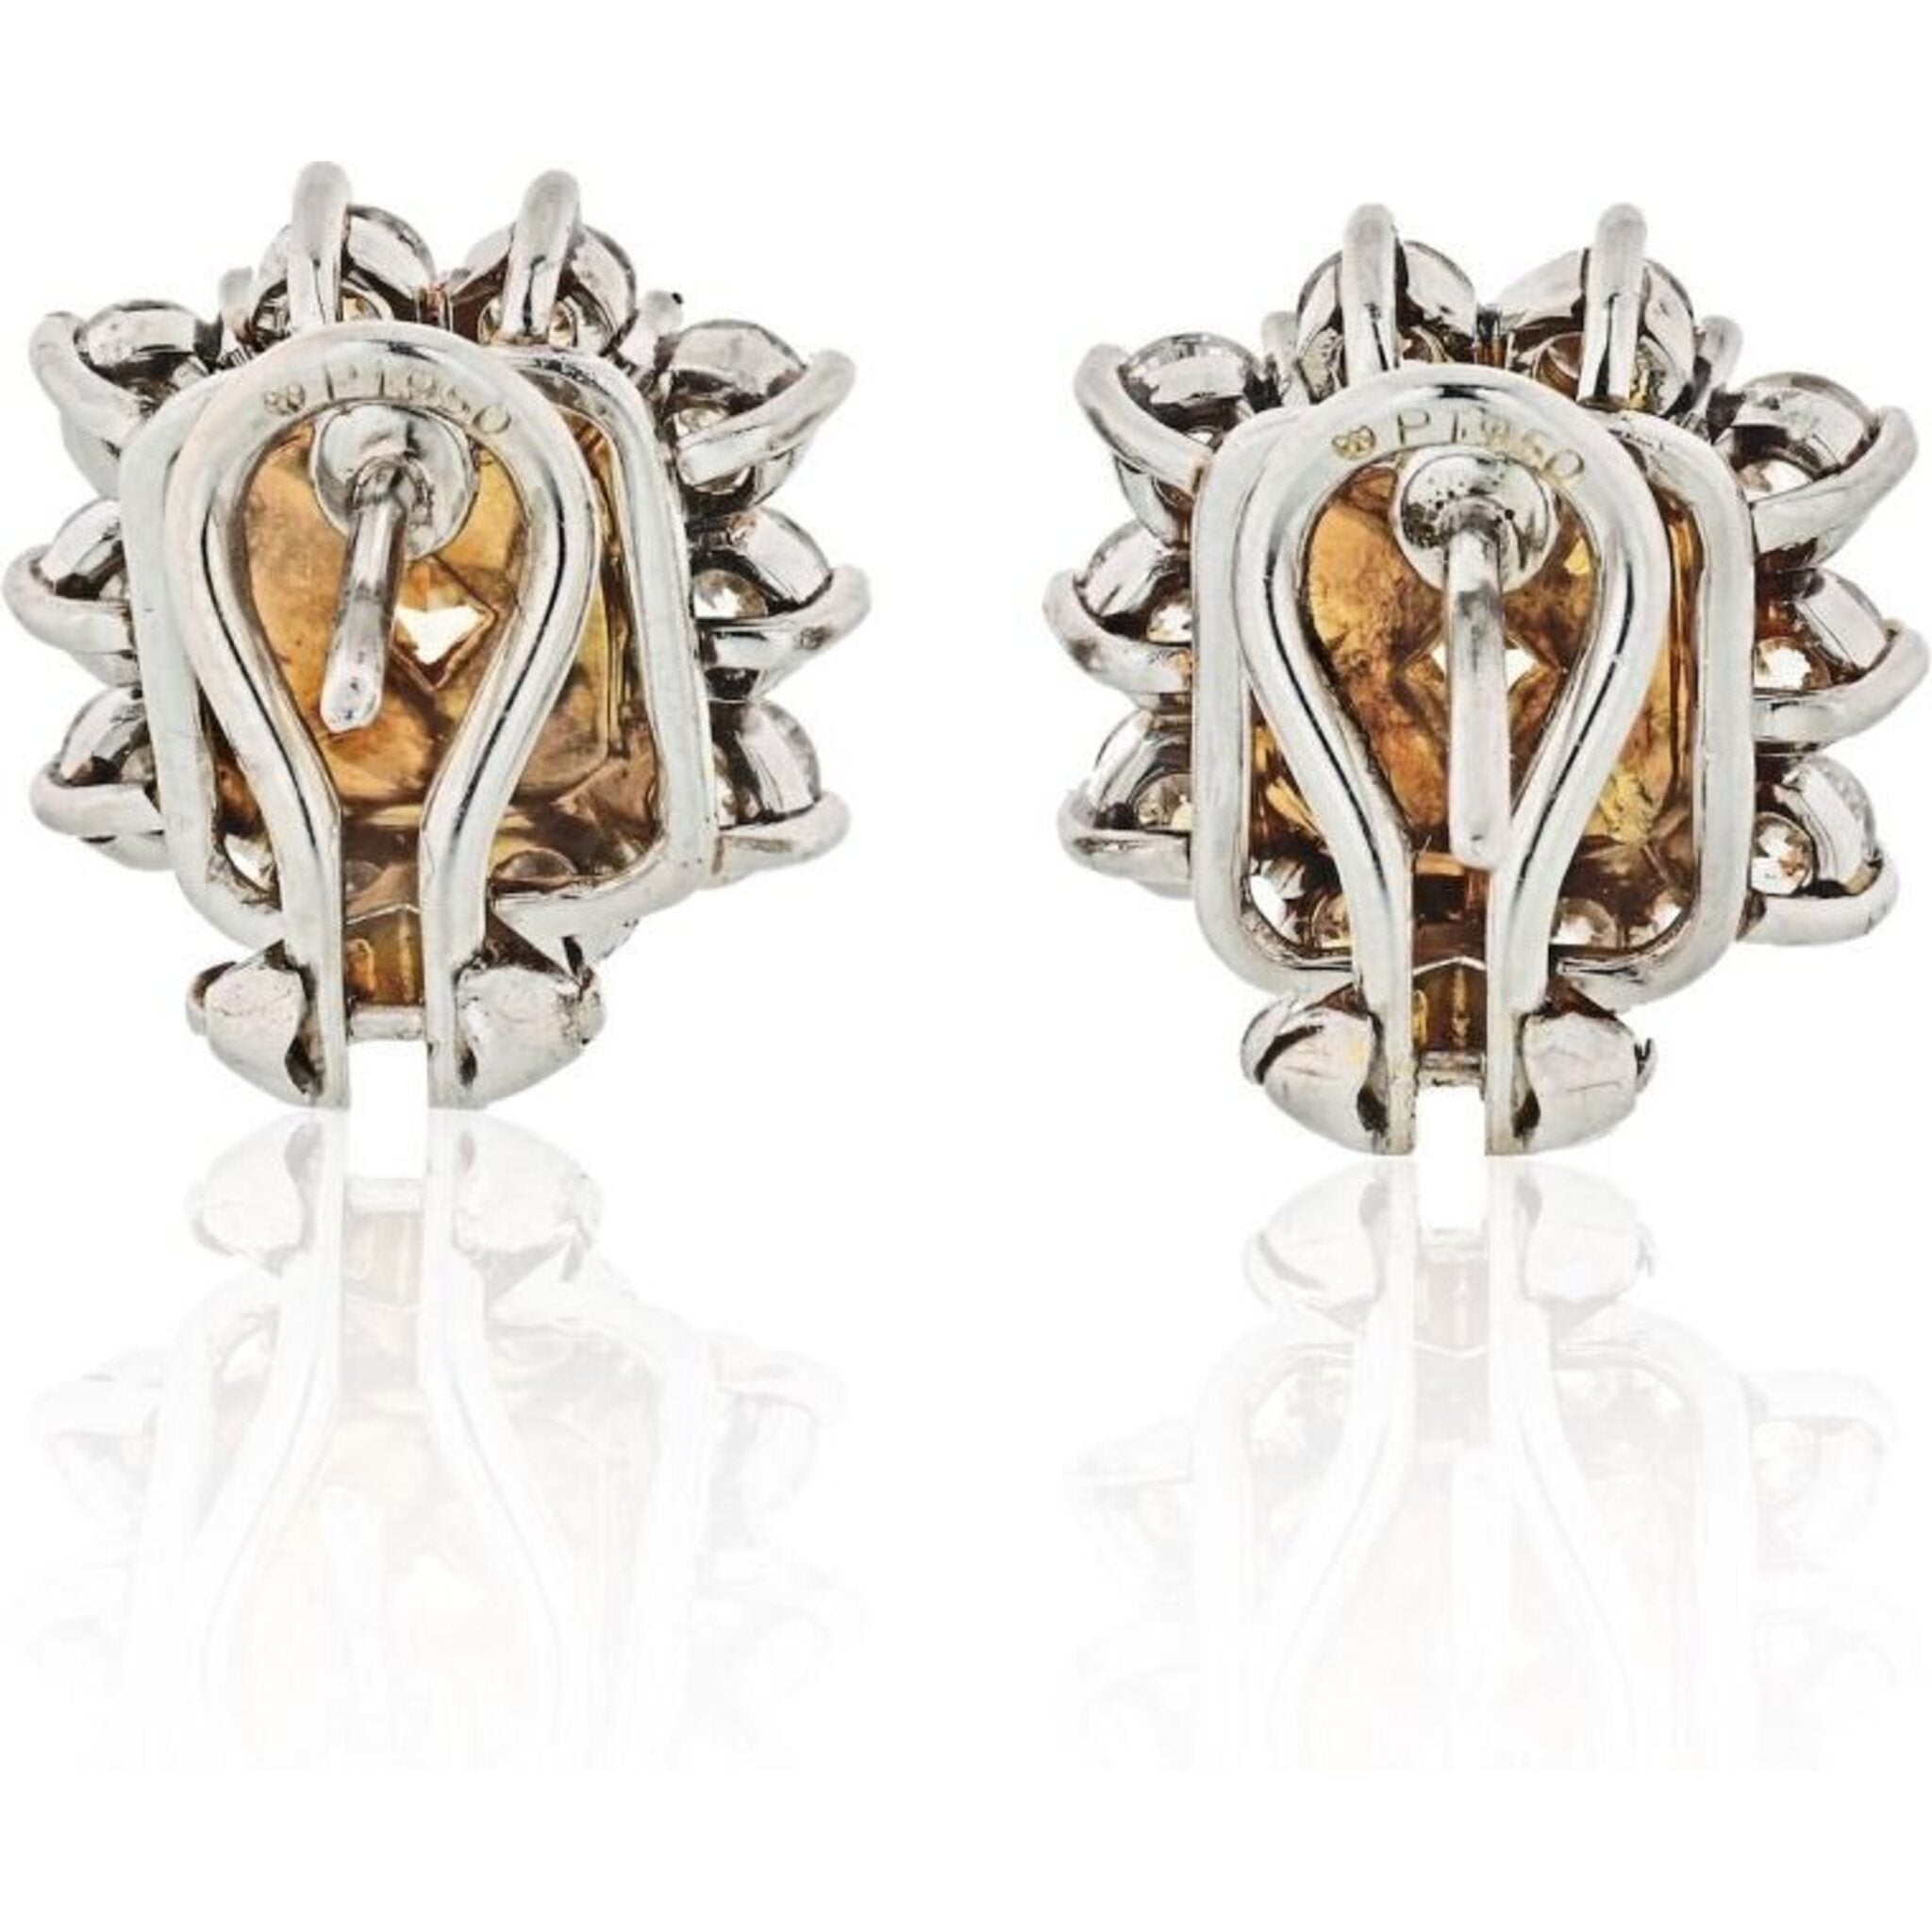 HIBRO 80s Jewelry Fancy Rubys Copper Silver Plated Stud Earrings Women's  Earrings Set With Zircon Gold Plated Earrings - Walmart.com